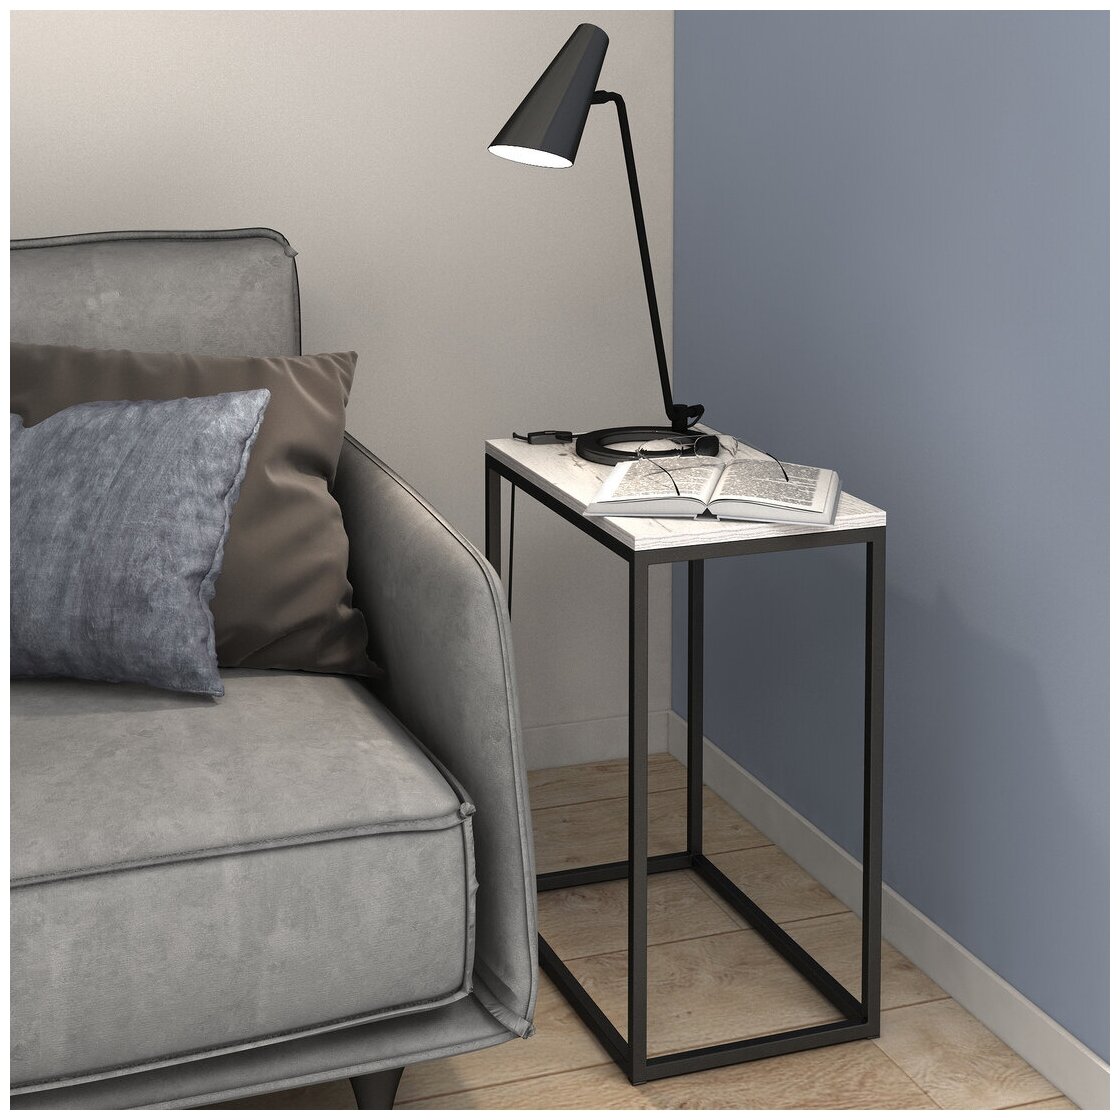 Консольный столик светло-серый, консоль мебельная, столик журнальный, приставной столик, 60x50x30 см, BELLA loft, Гростат - фотография № 6